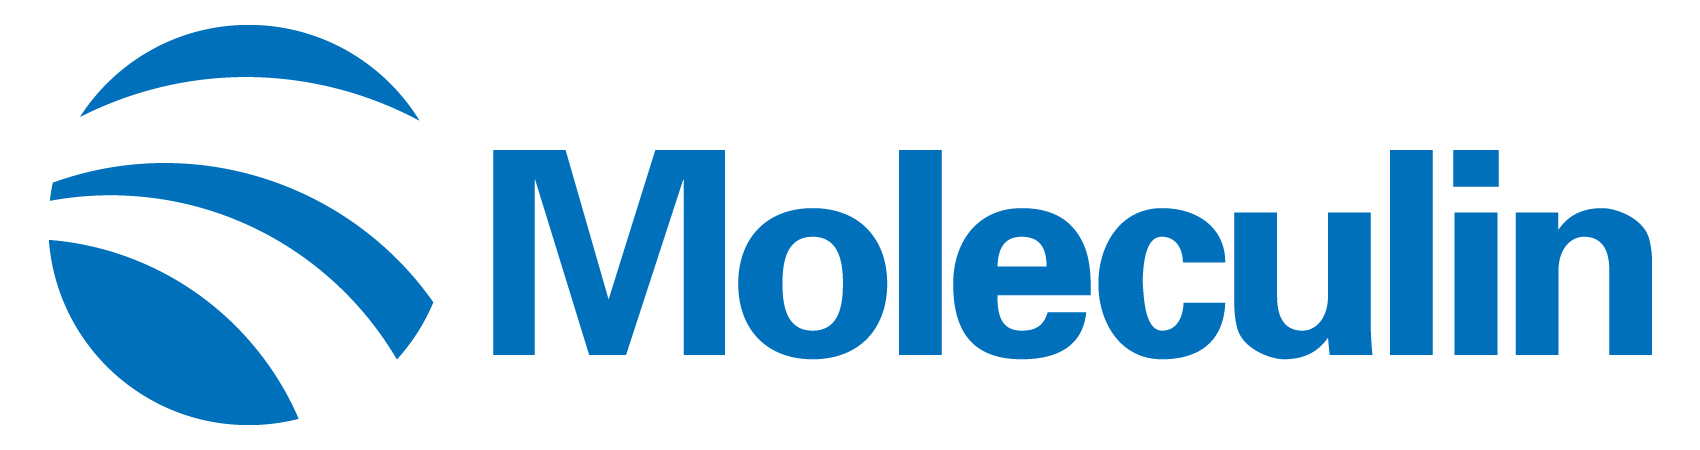 moleculin-logo_horiza23.jpg